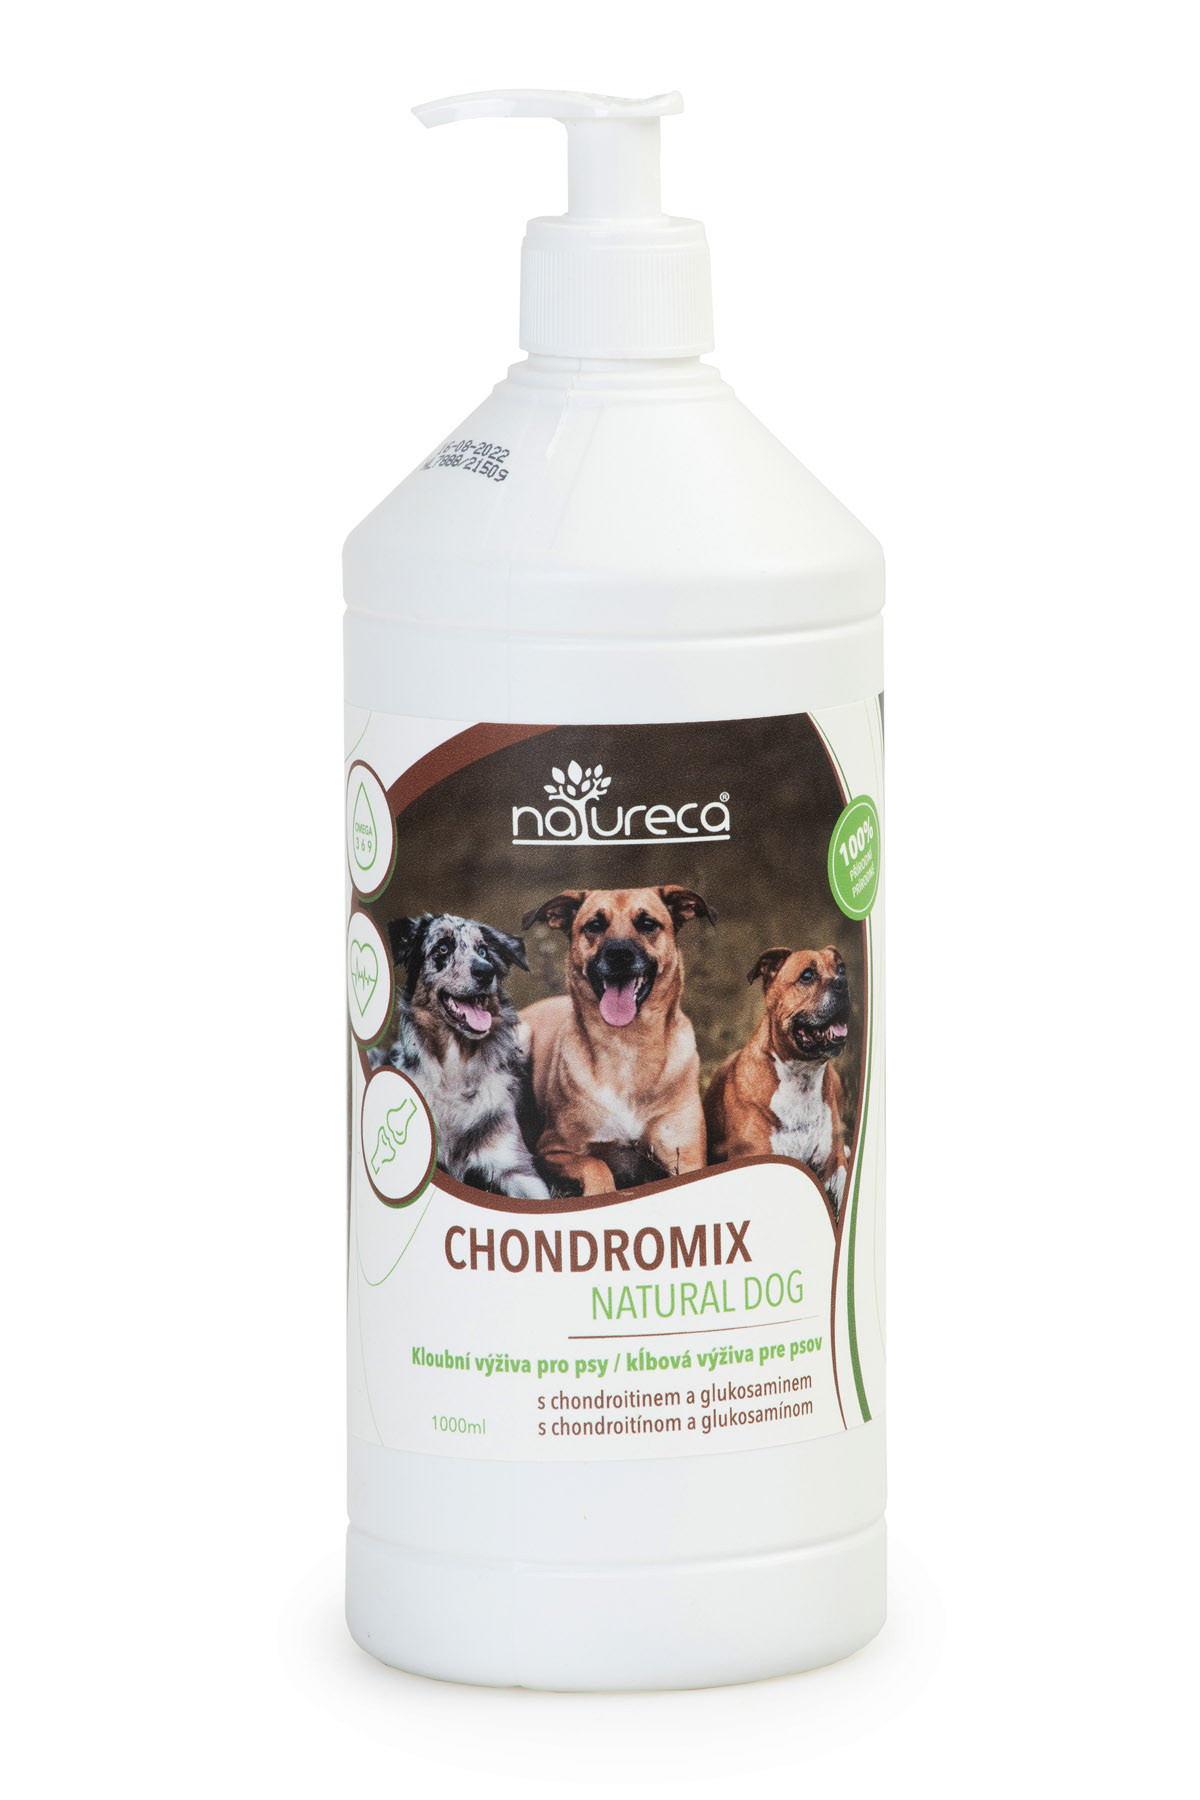 Chondromix Natural Dog 1000ml, klbová výživa 